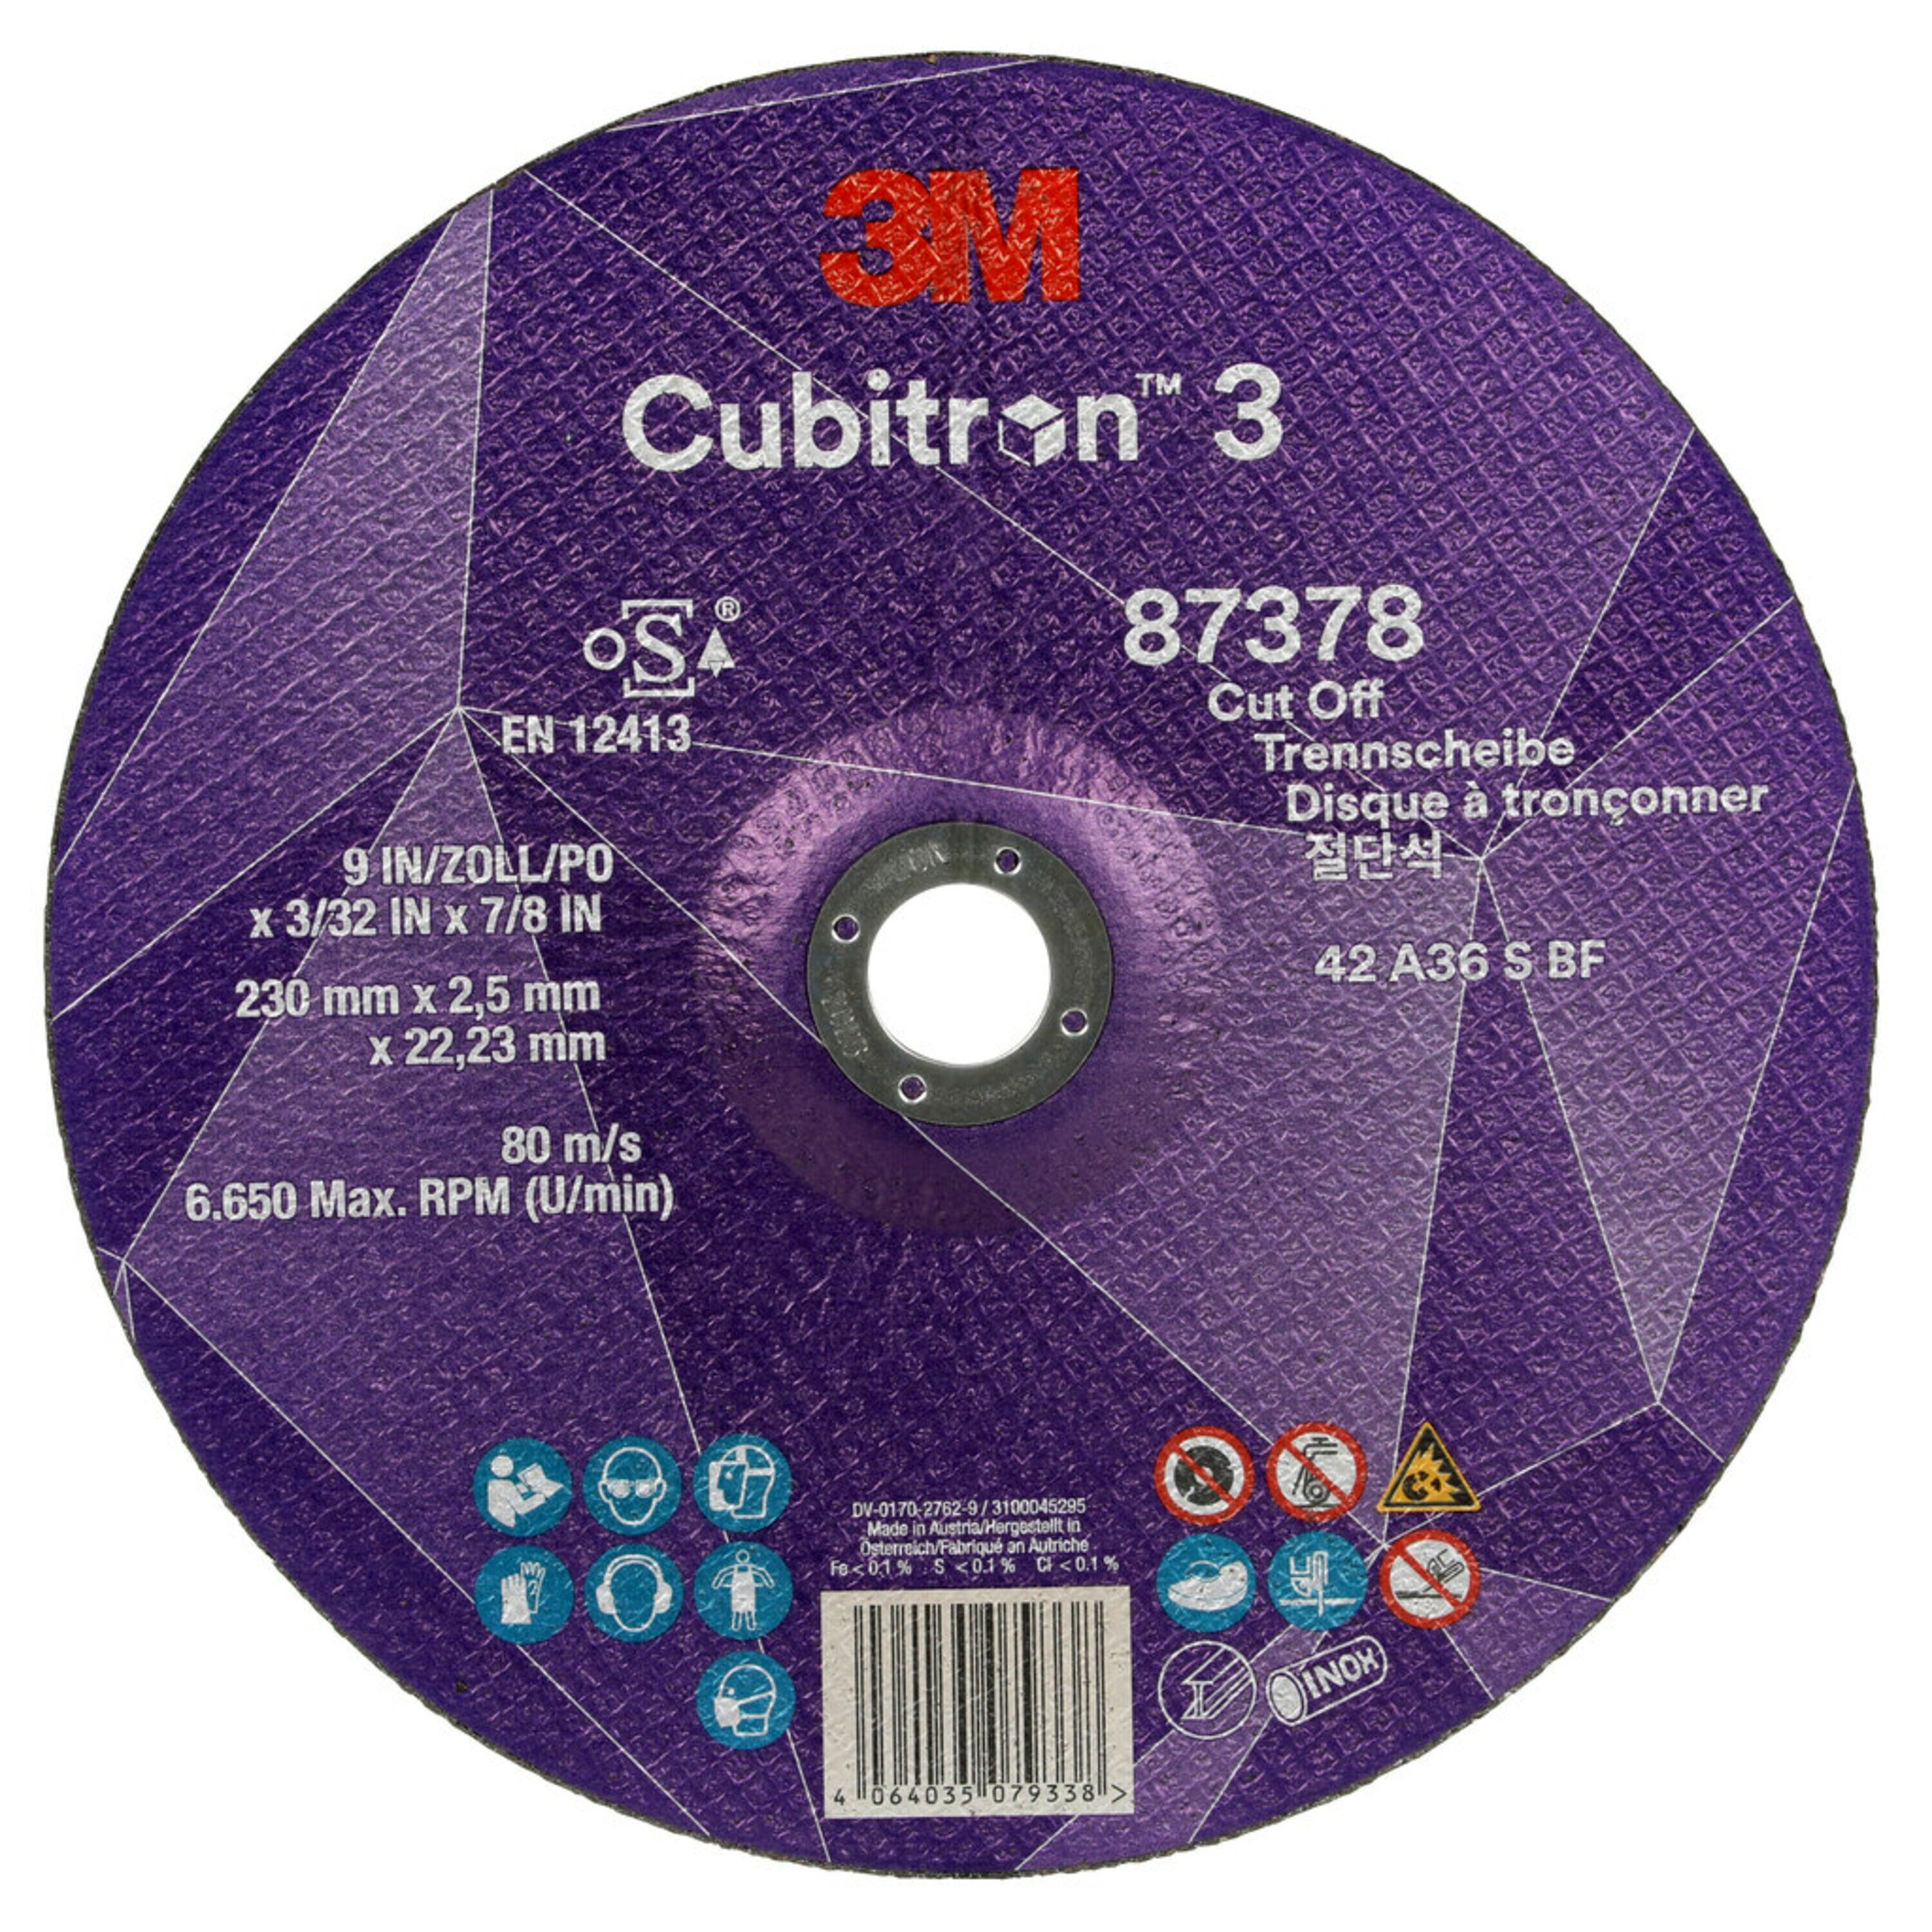 3M Cubitron 3 disco da taglio, 230 mm, 2,5 mm, 22,23 mm, 36 , tipo 42 #87378